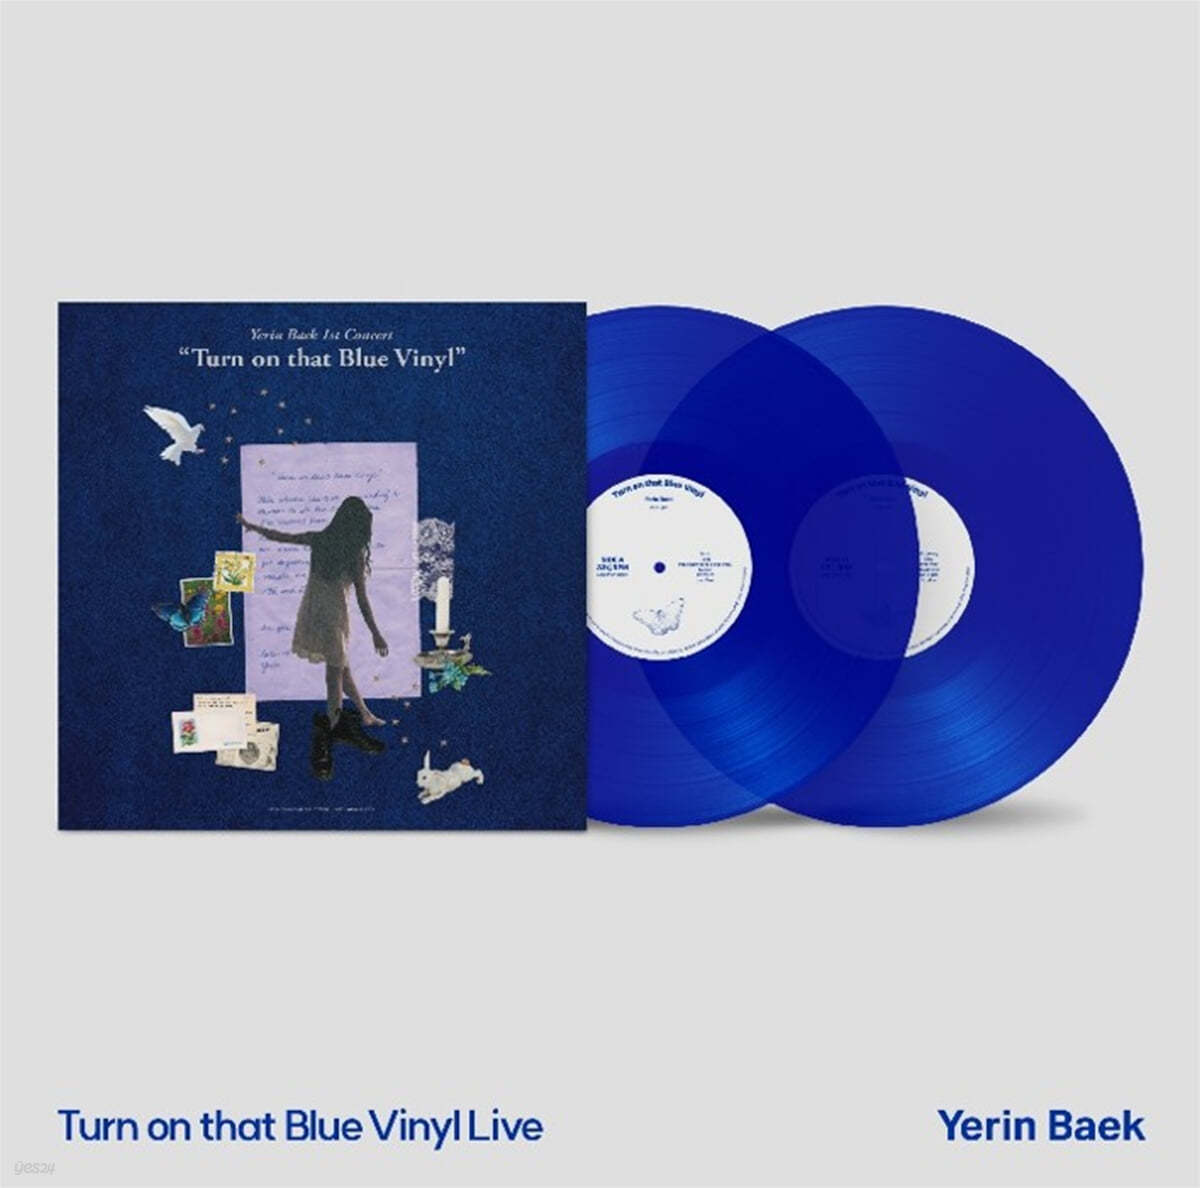 백예린 - 단독공연 Turn on that Blue Vinyl 라이브 특별반 [블루 컬러 2LP]